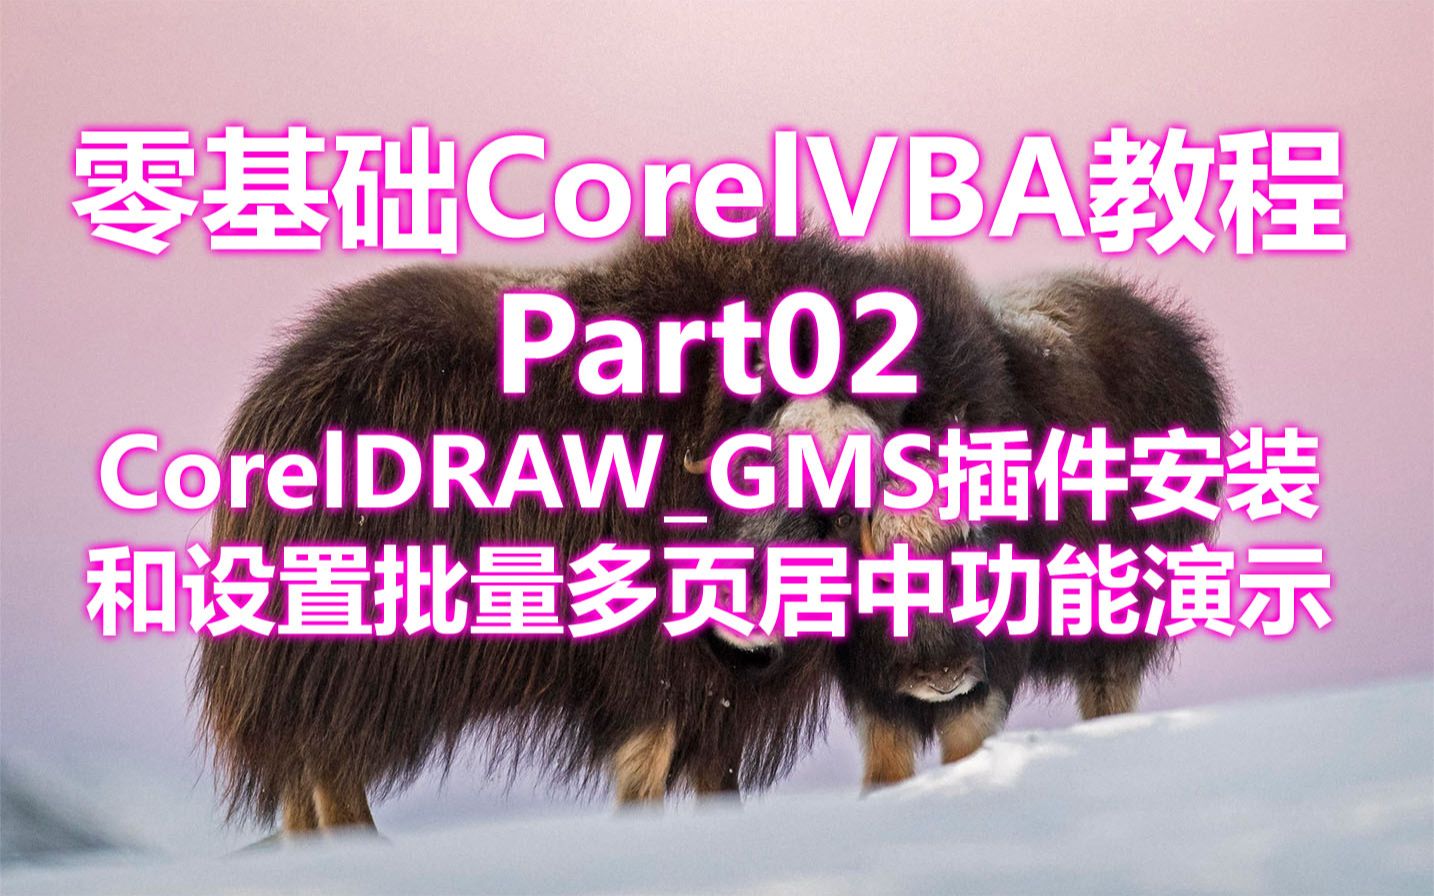 零基础CorelVBA教程_Part02_CorelDRAW_GMS插件安装和设置_批量多页居中功能演示